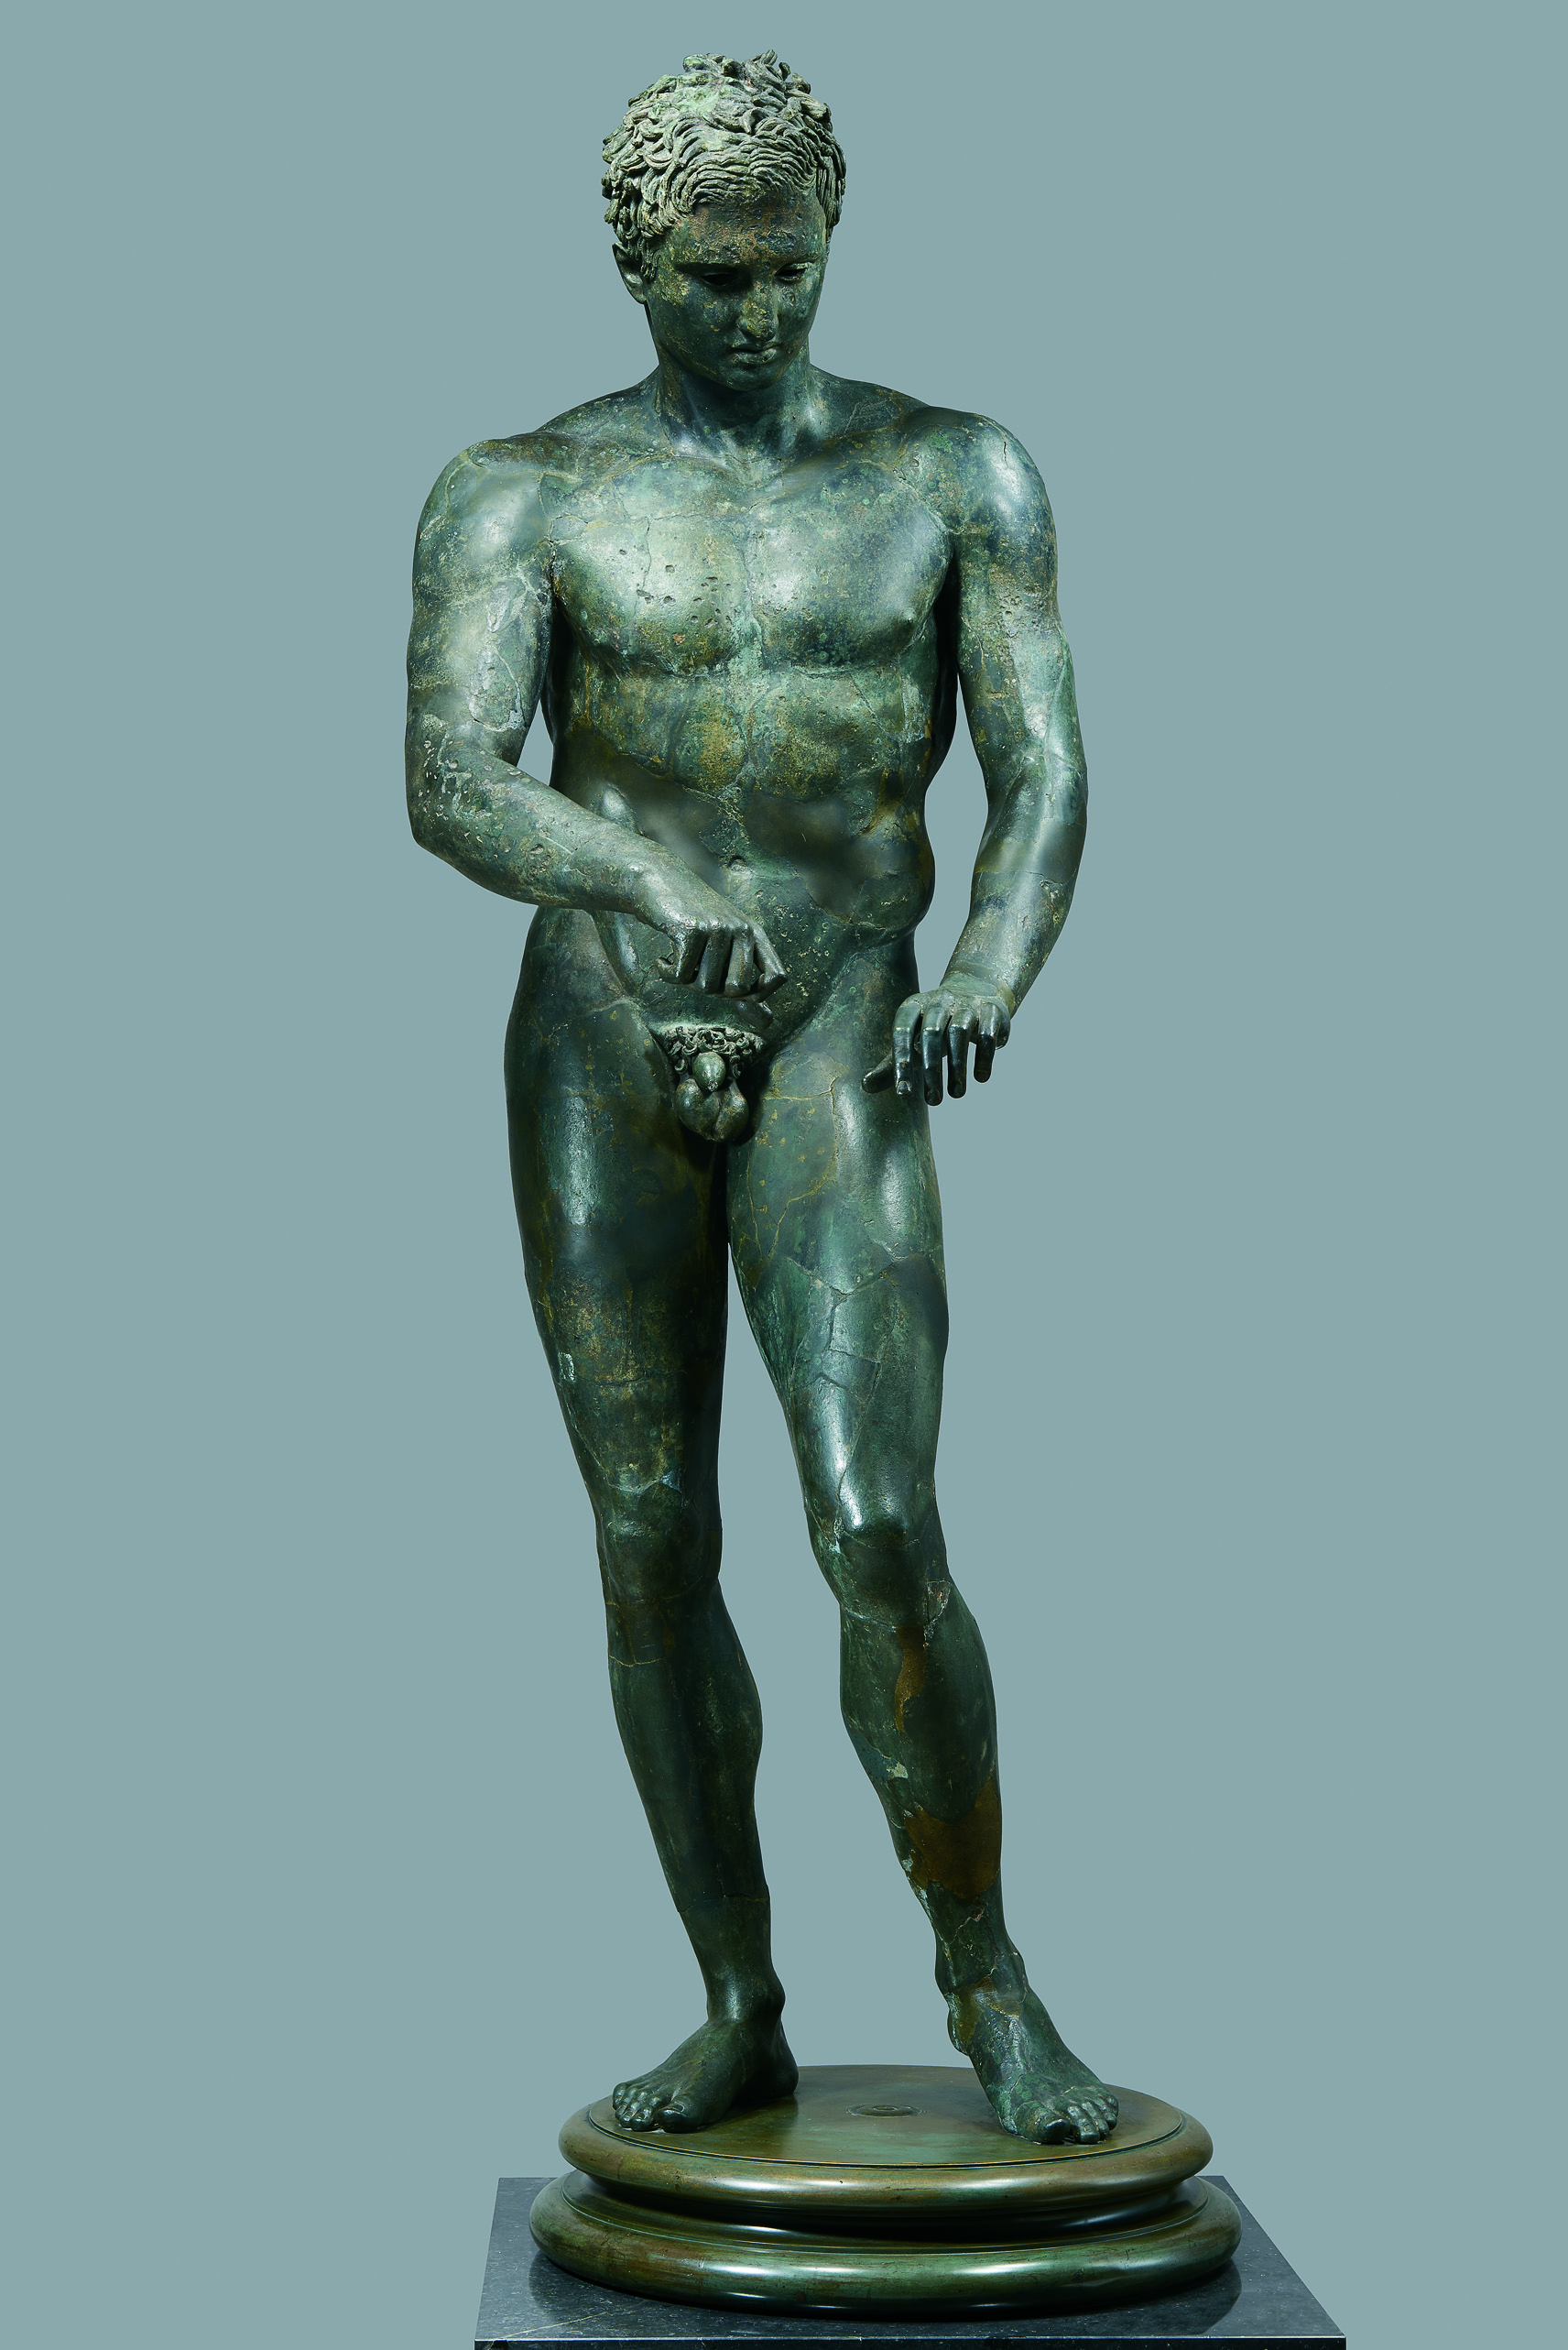 Древнегреческие атлеты. Лисипп Апоксиомен. Статуя Апоксиомена Лисипп. Поликлет Апоксиомен. Древнегреческие статуи спортсменов Апоксиомена.